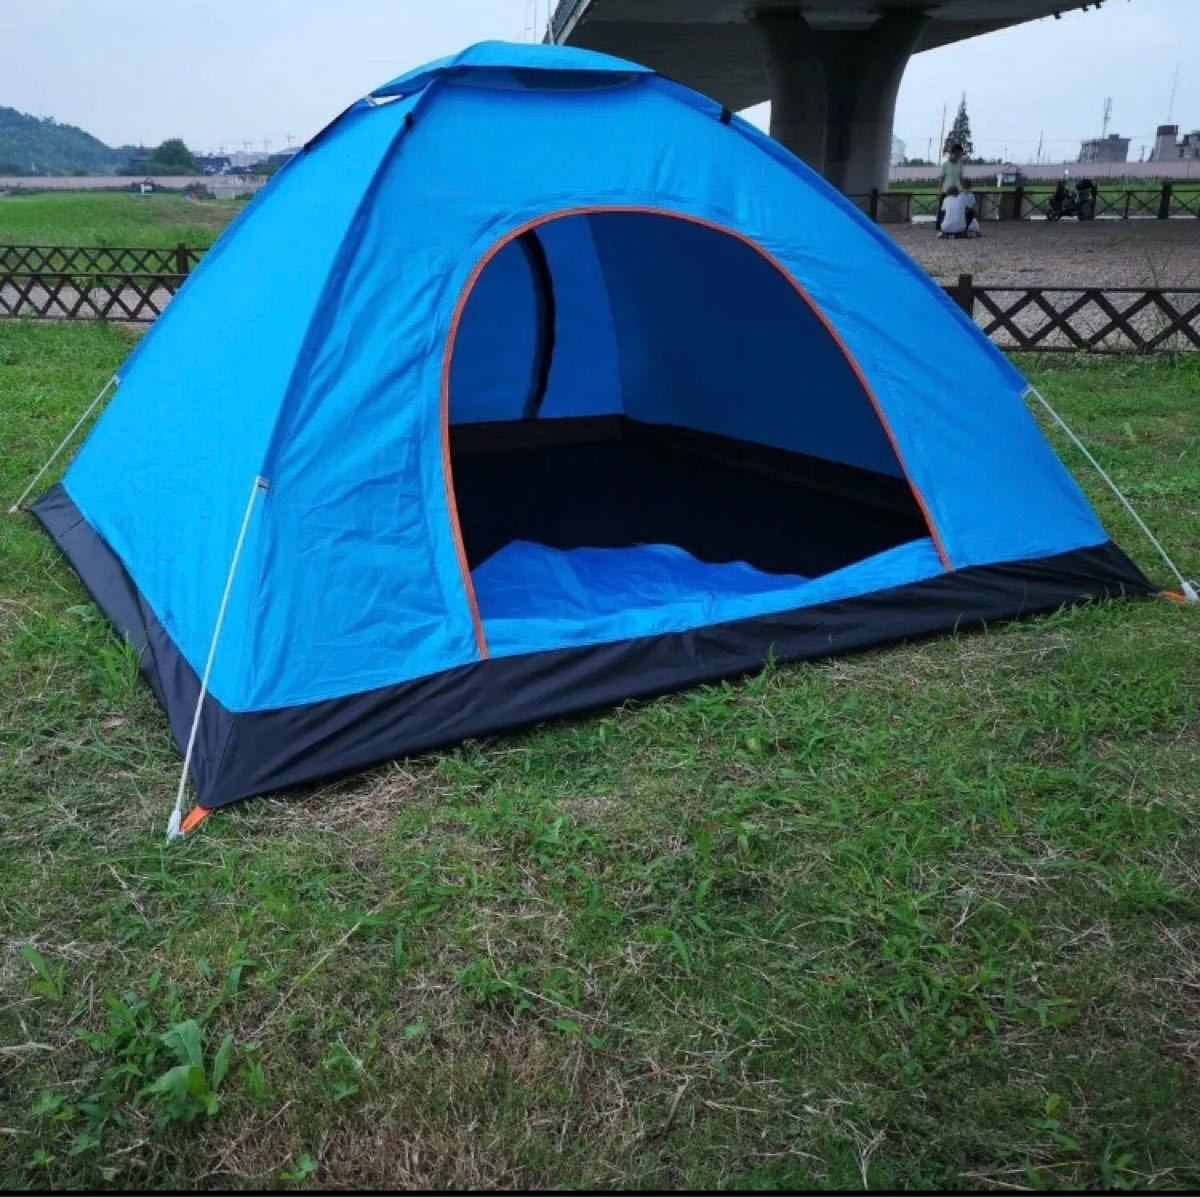 ワンタッチテント 2-3人用 ブルー キャンプ アウトドア用品 自動 ドームテント 簡単 キャンプテント 軽量 折りたたみ 850